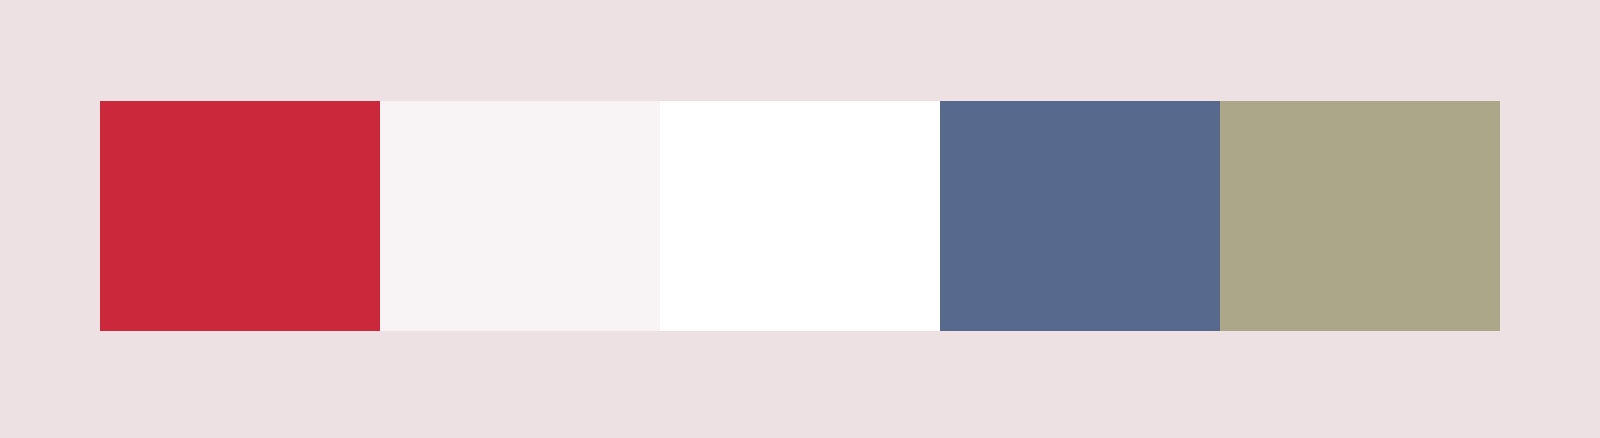 Paleta de colores del diseño web de CRELOC